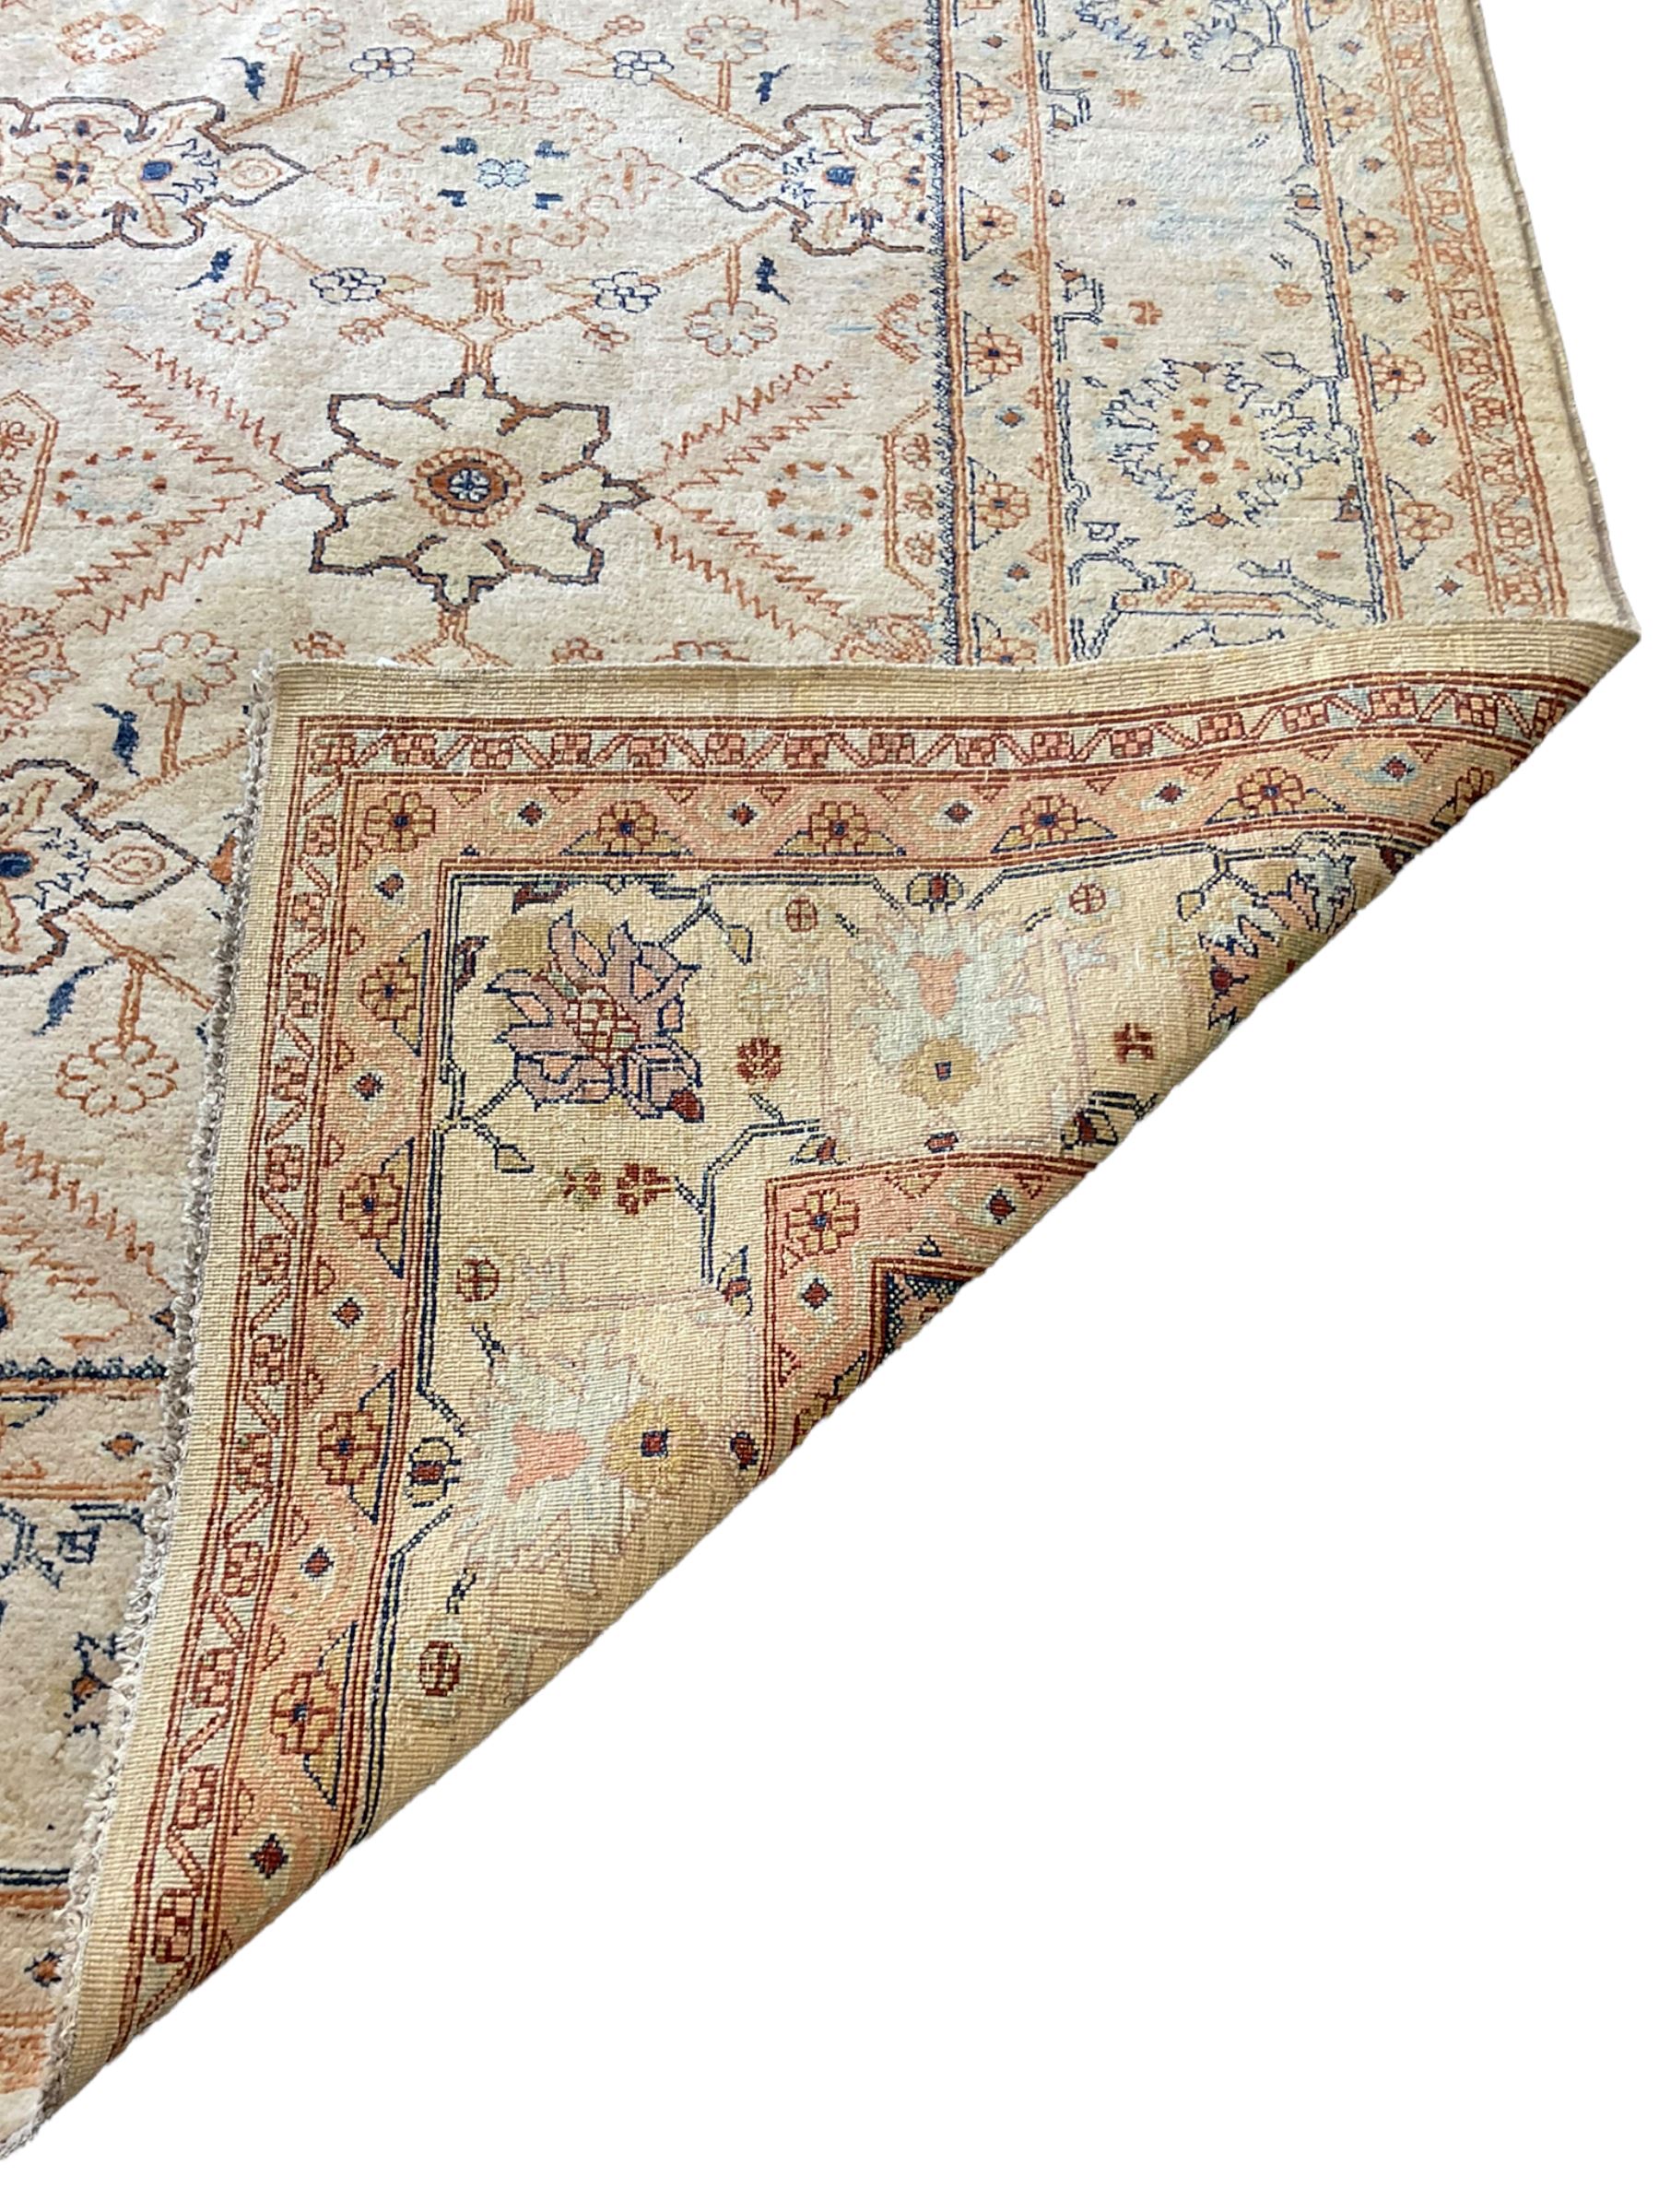 Turkish beige ground rug carpet - Image 4 of 4